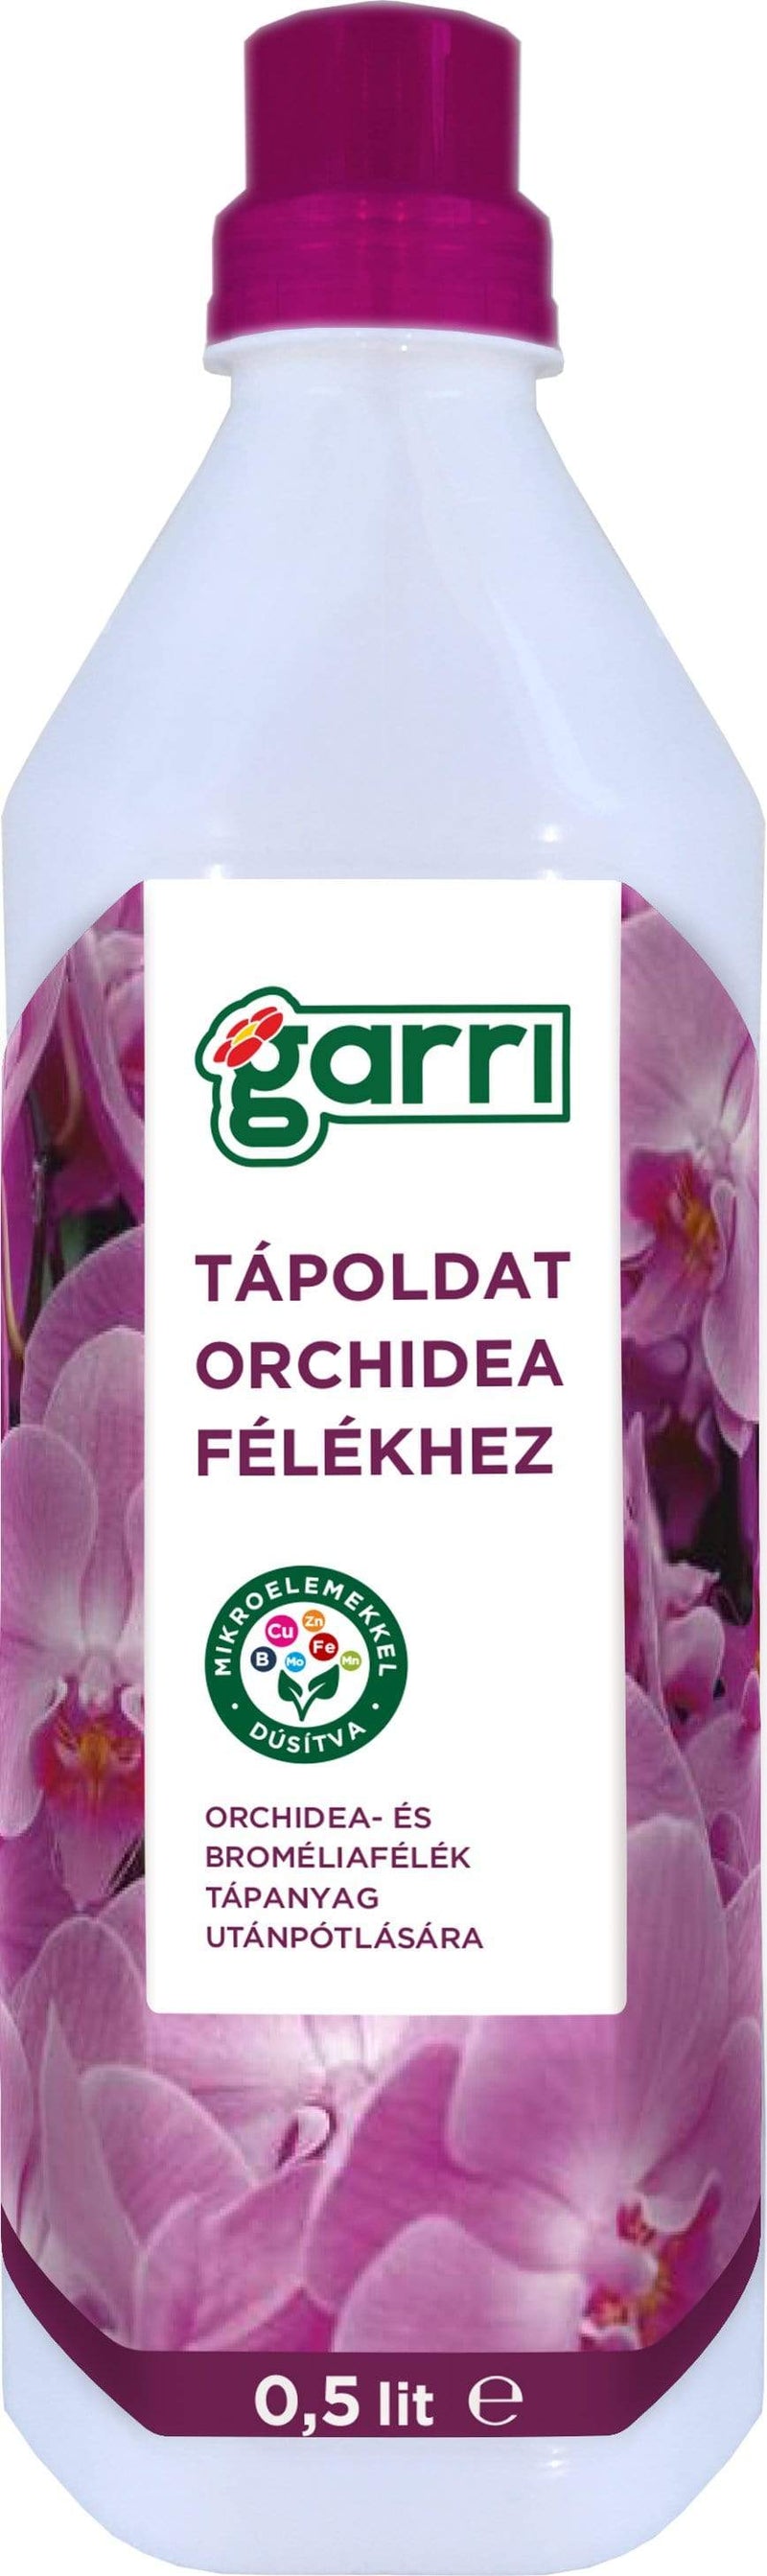 Gardinohu Ápolás_és_gondozás 0,5l Garri Tápoldat Orchidea